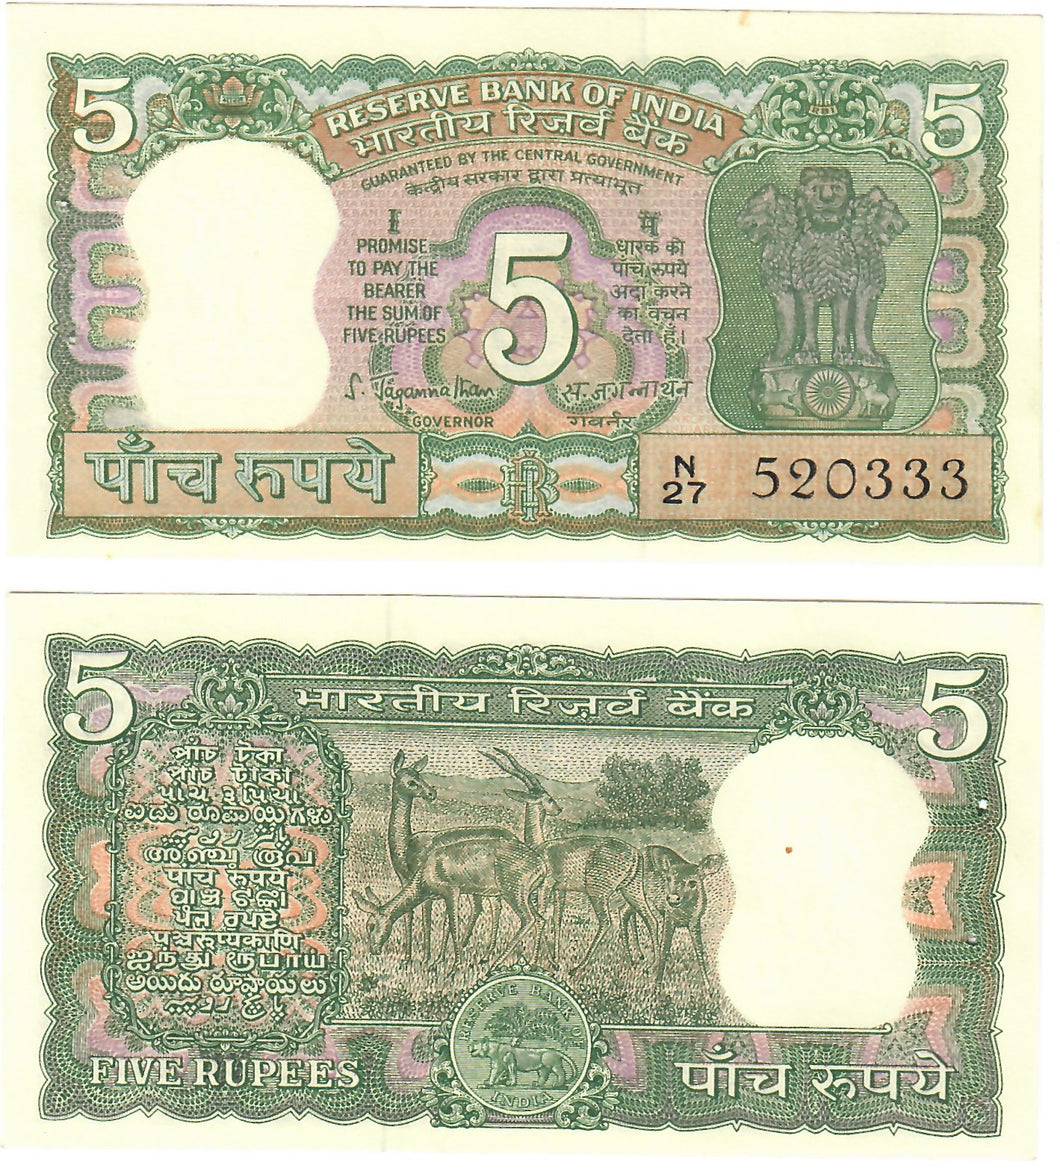 India 5 Rupees 1970 UNC (w pinholes)